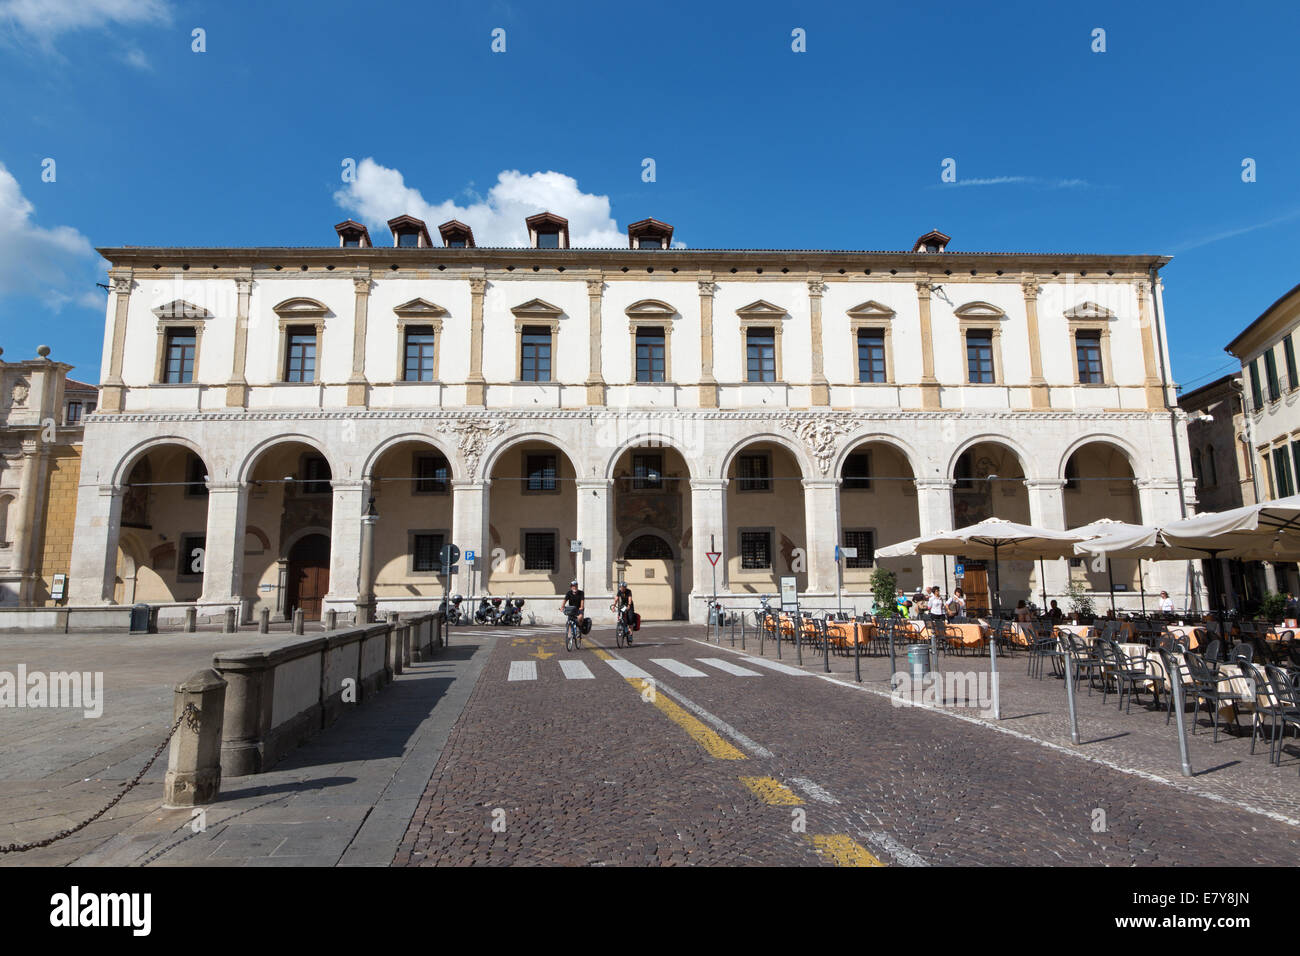 Padoue, Italie - 10 septembre 2014 : Le Palazzo del Capitanio sur la place Piazza del Duomo. Banque D'Images